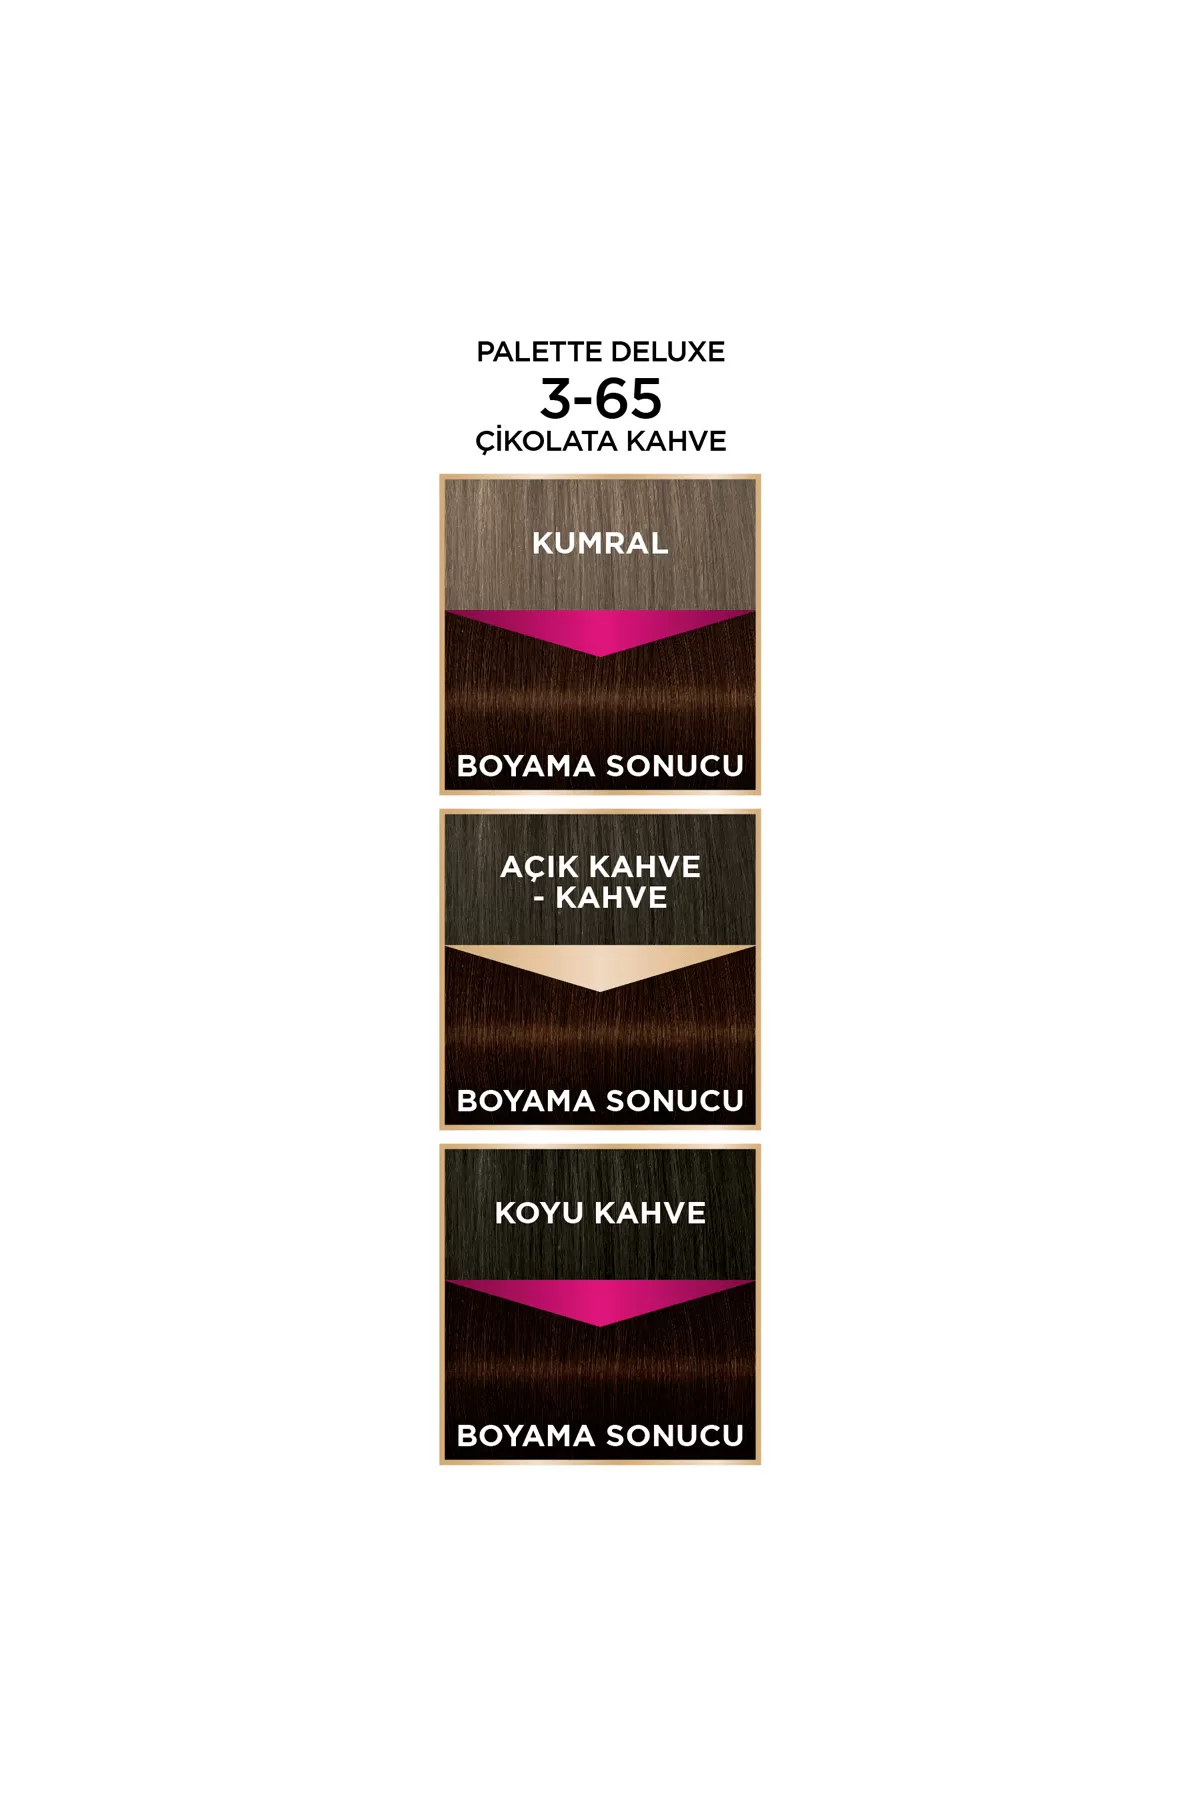 رنگ مو تقویت مو رنگ دهی یک دست پالت Palette رنگ مو قهوه ای شکلاتی شماره 36 3